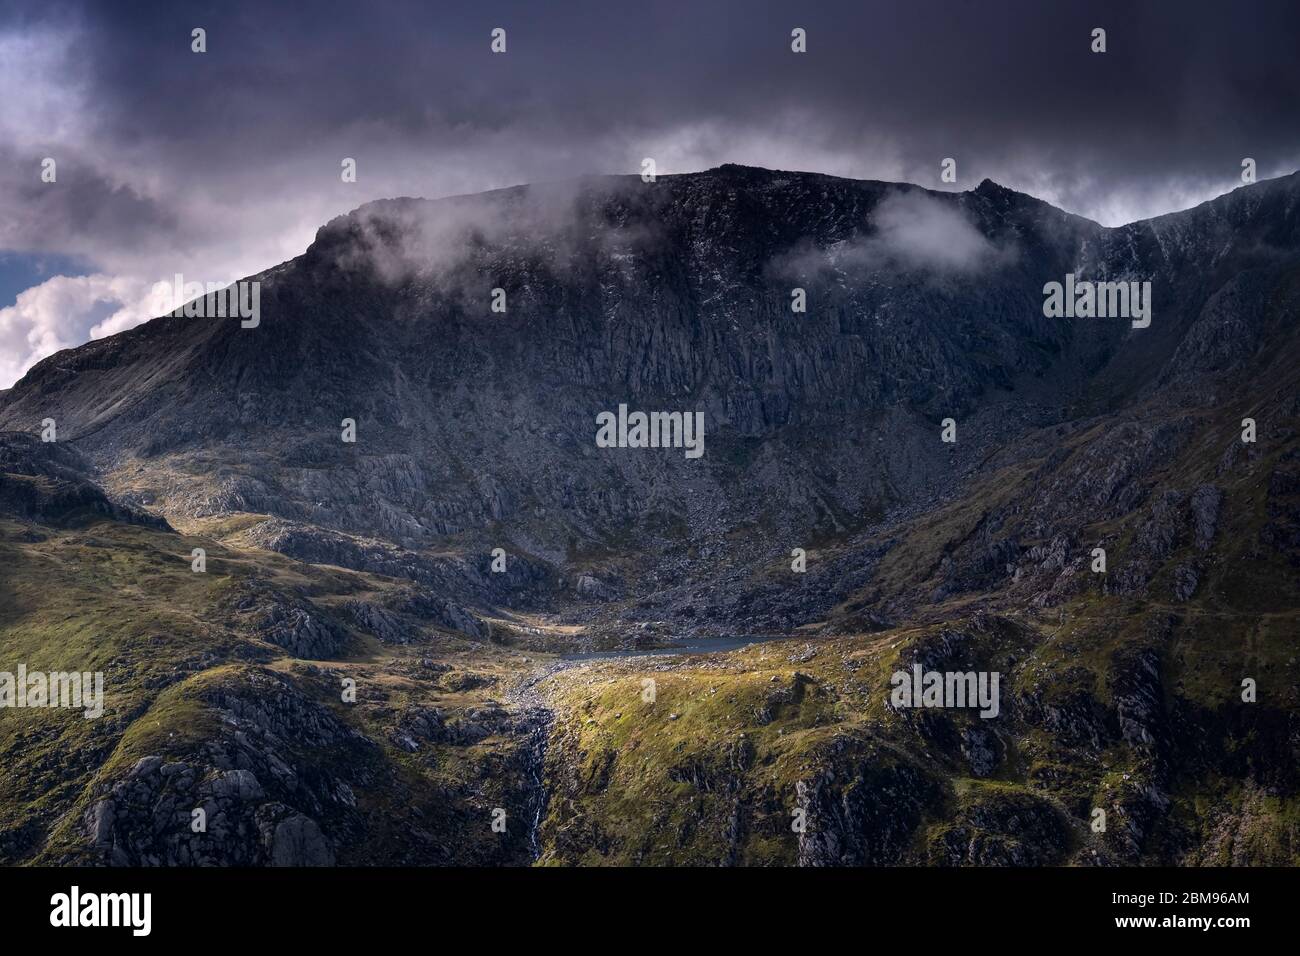 A dramatic view of Llyn Bochlwyd backed by Glyder Fach, Cwm Bochlwyd, Snowdonia National Park, North Wales, UK Stock Photo